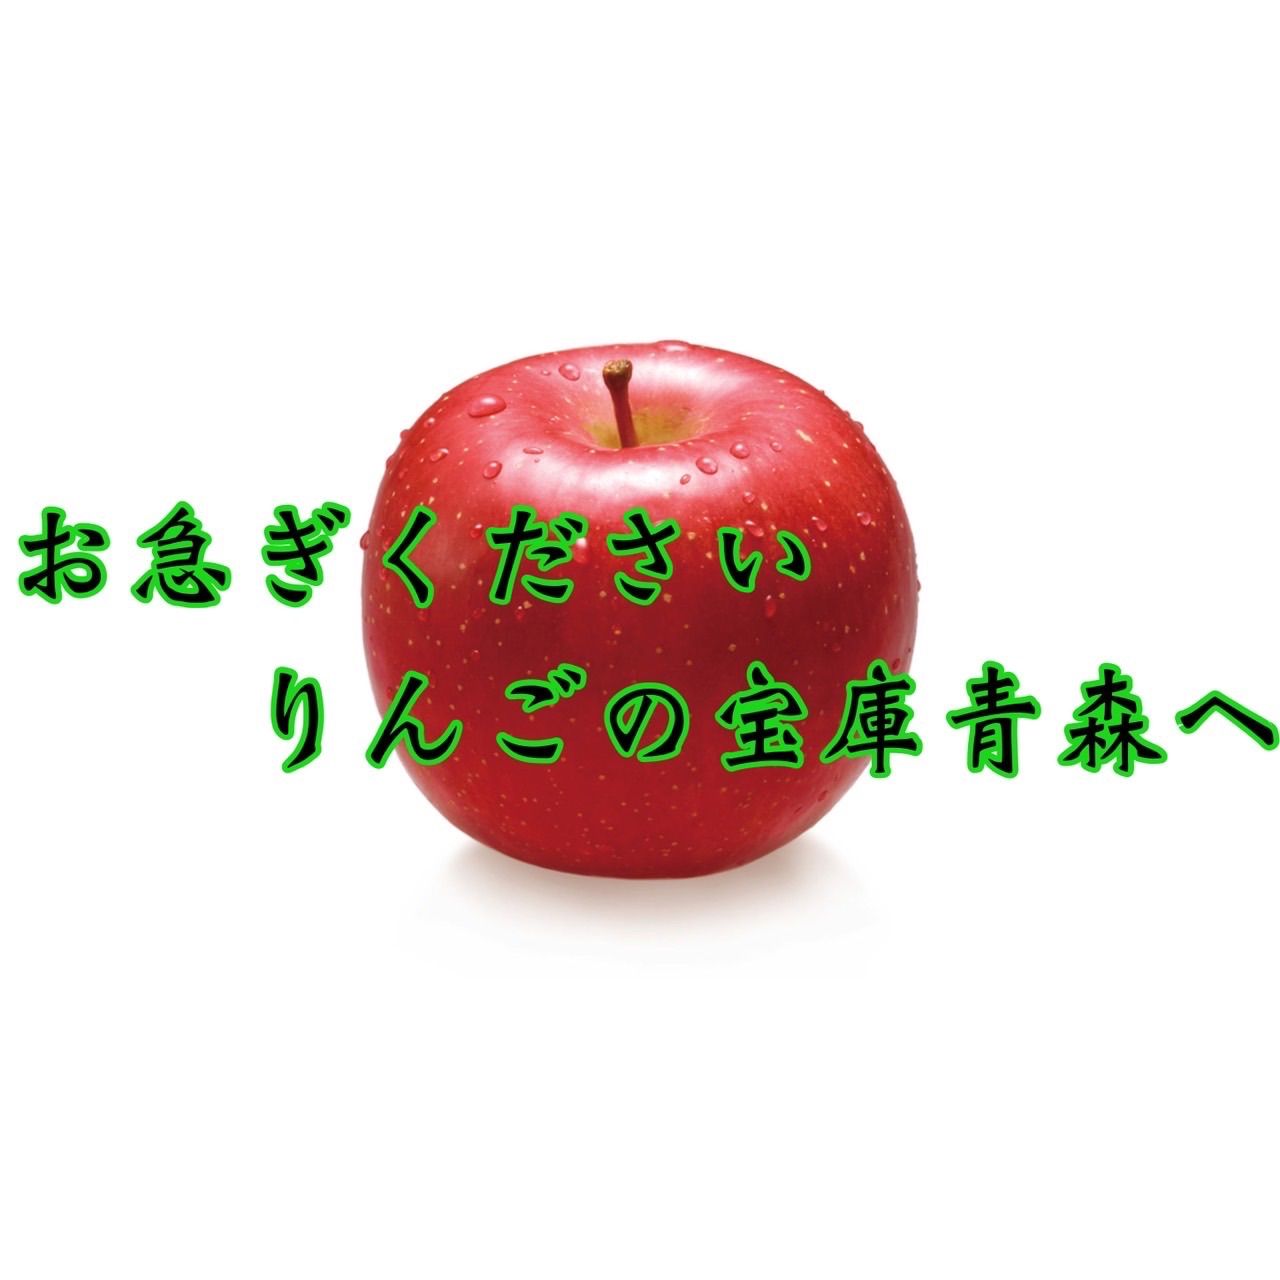 青森県産サンふじりんご訳あり3㎏9玉入り-7